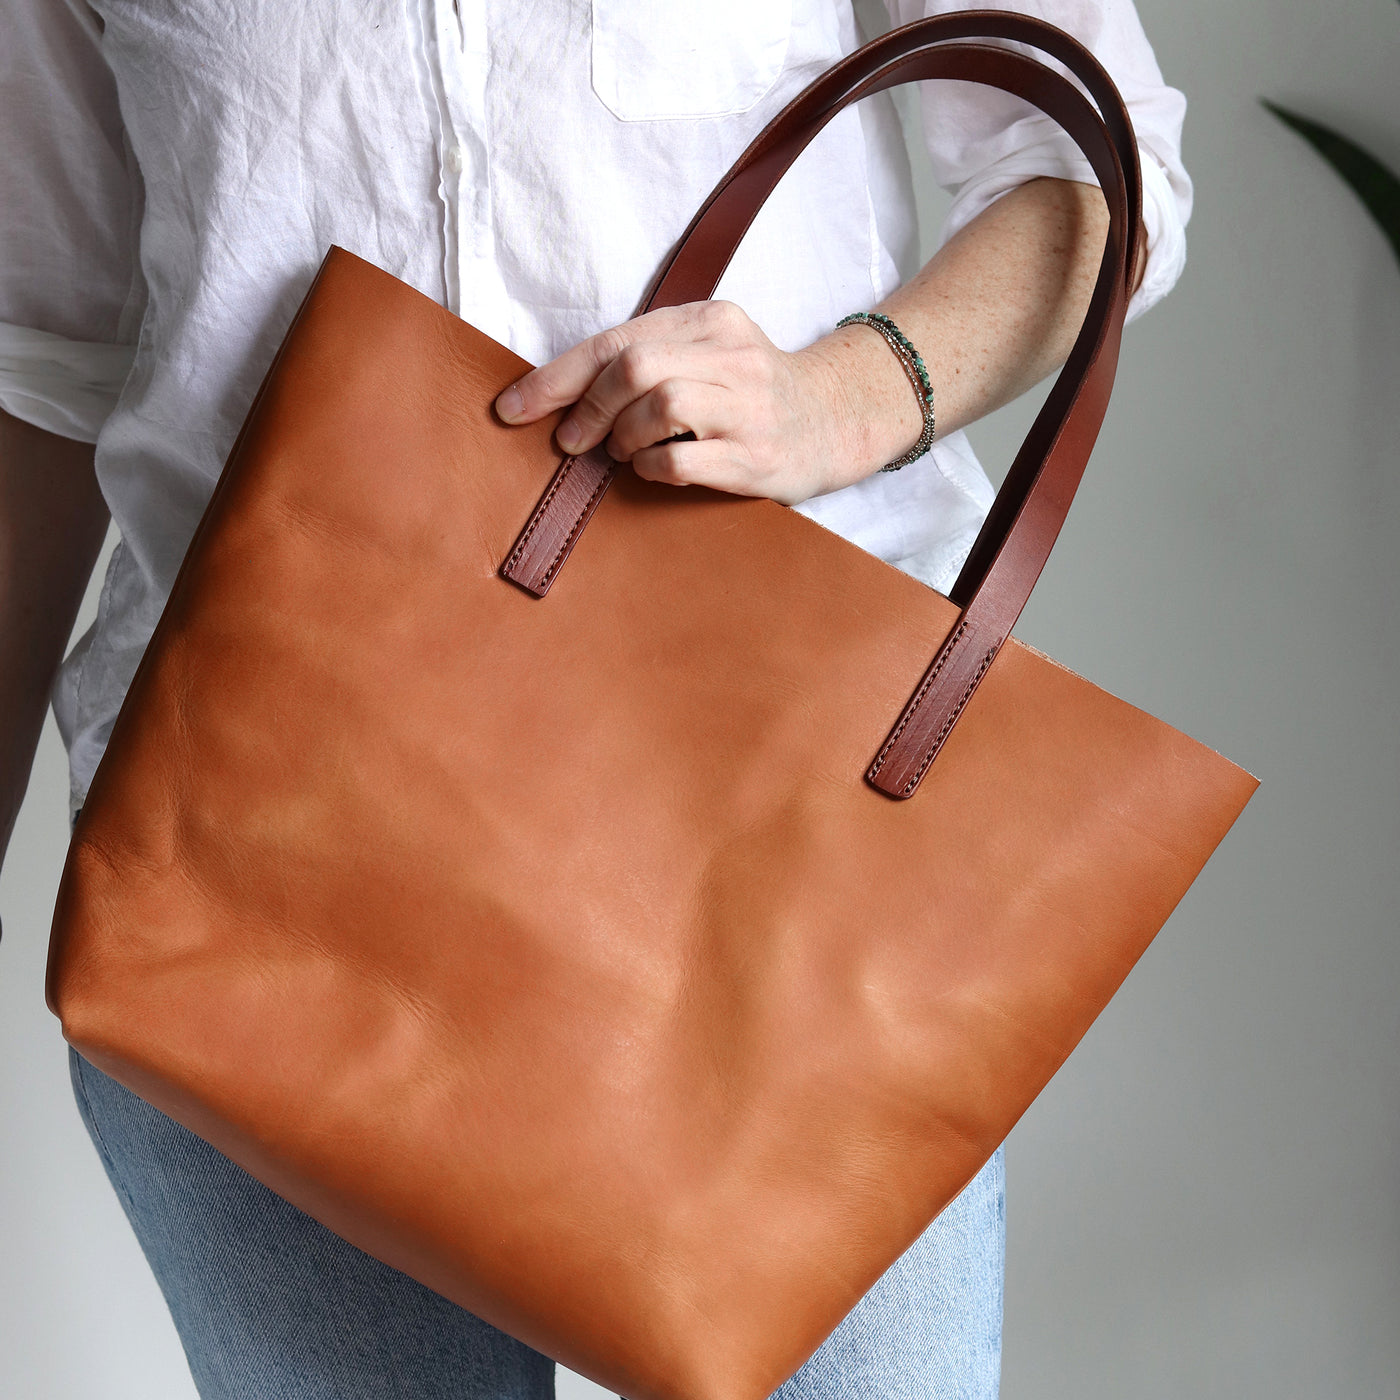 Minimalist Leather Tote Bag